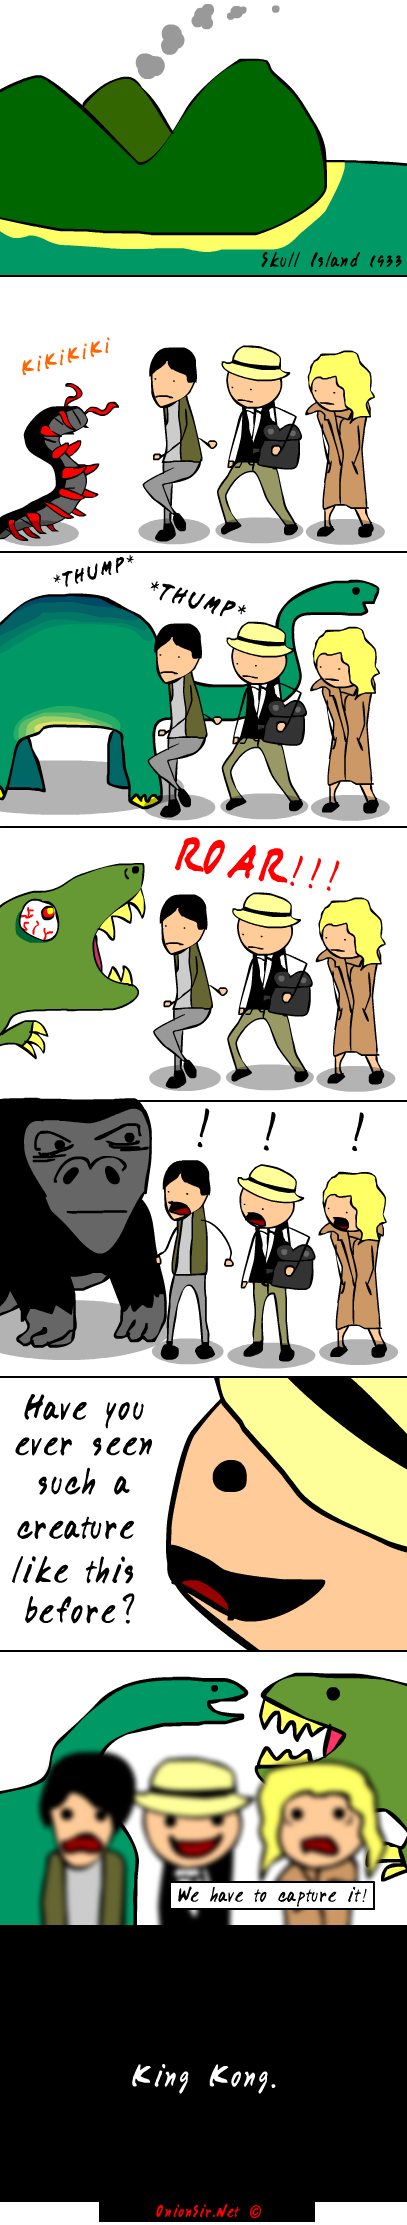 King Kong Logic